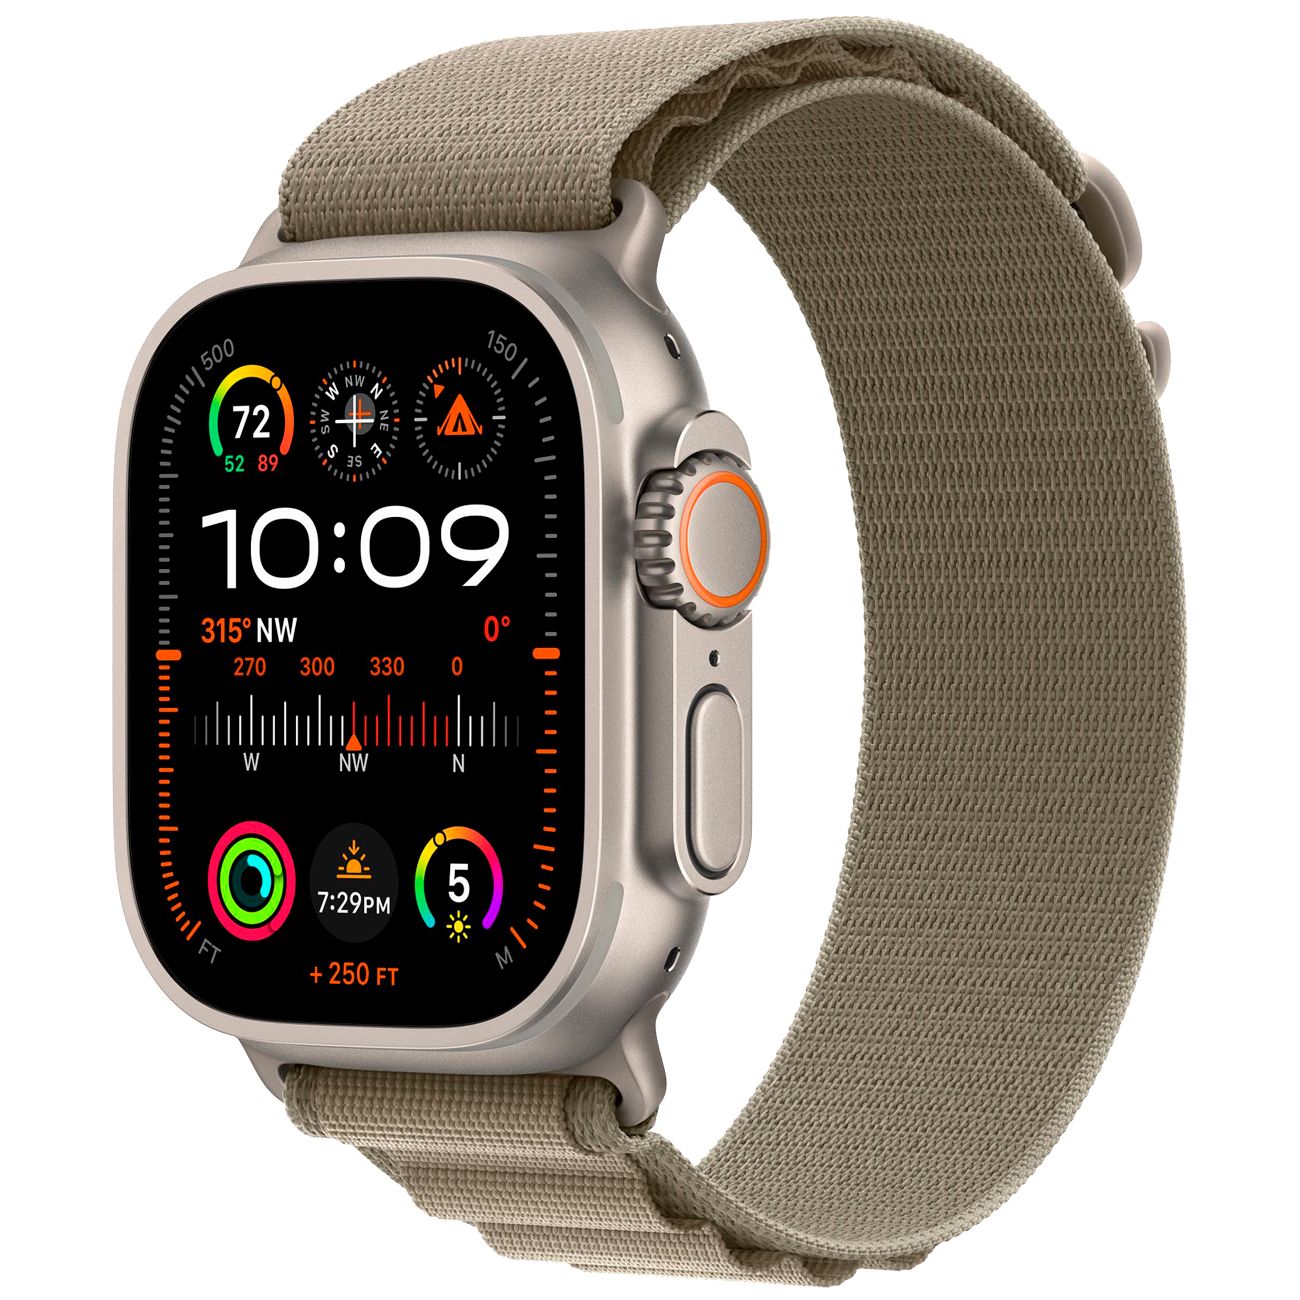 Купить смарт-часы apple watch ultra 2 alpine loop olive Apple Watch Ultra 2 в официальном магазине Apple, Samsung, Xiaomi. iPixel.ru Купить, заказ, кредит, рассрочка, отзывы,  характеристики, цена,  фотографии, в подарок.